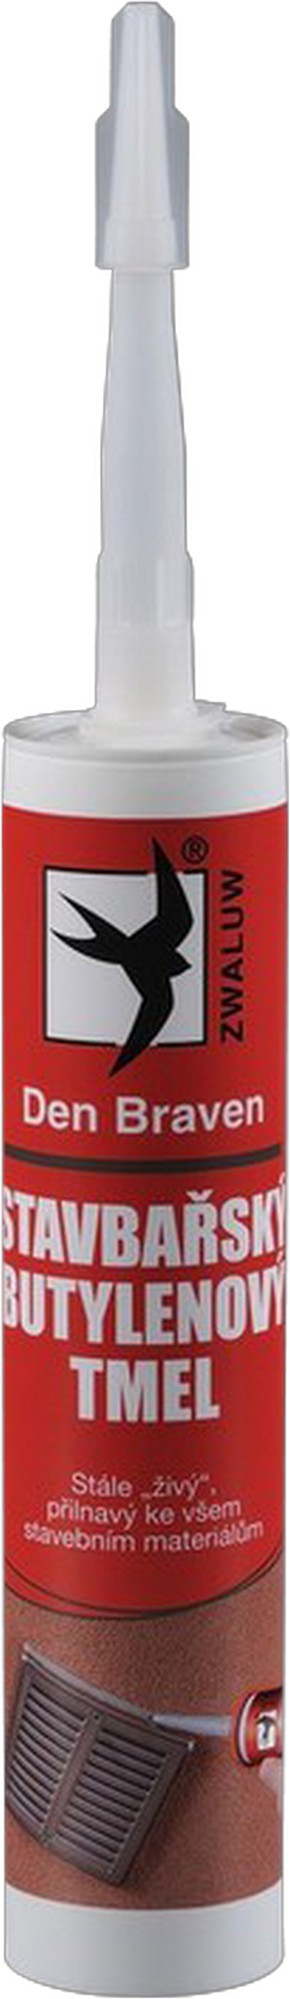 Tmel stavbařský butylenový Den Braven černý 310 ml DEN BRAVEN